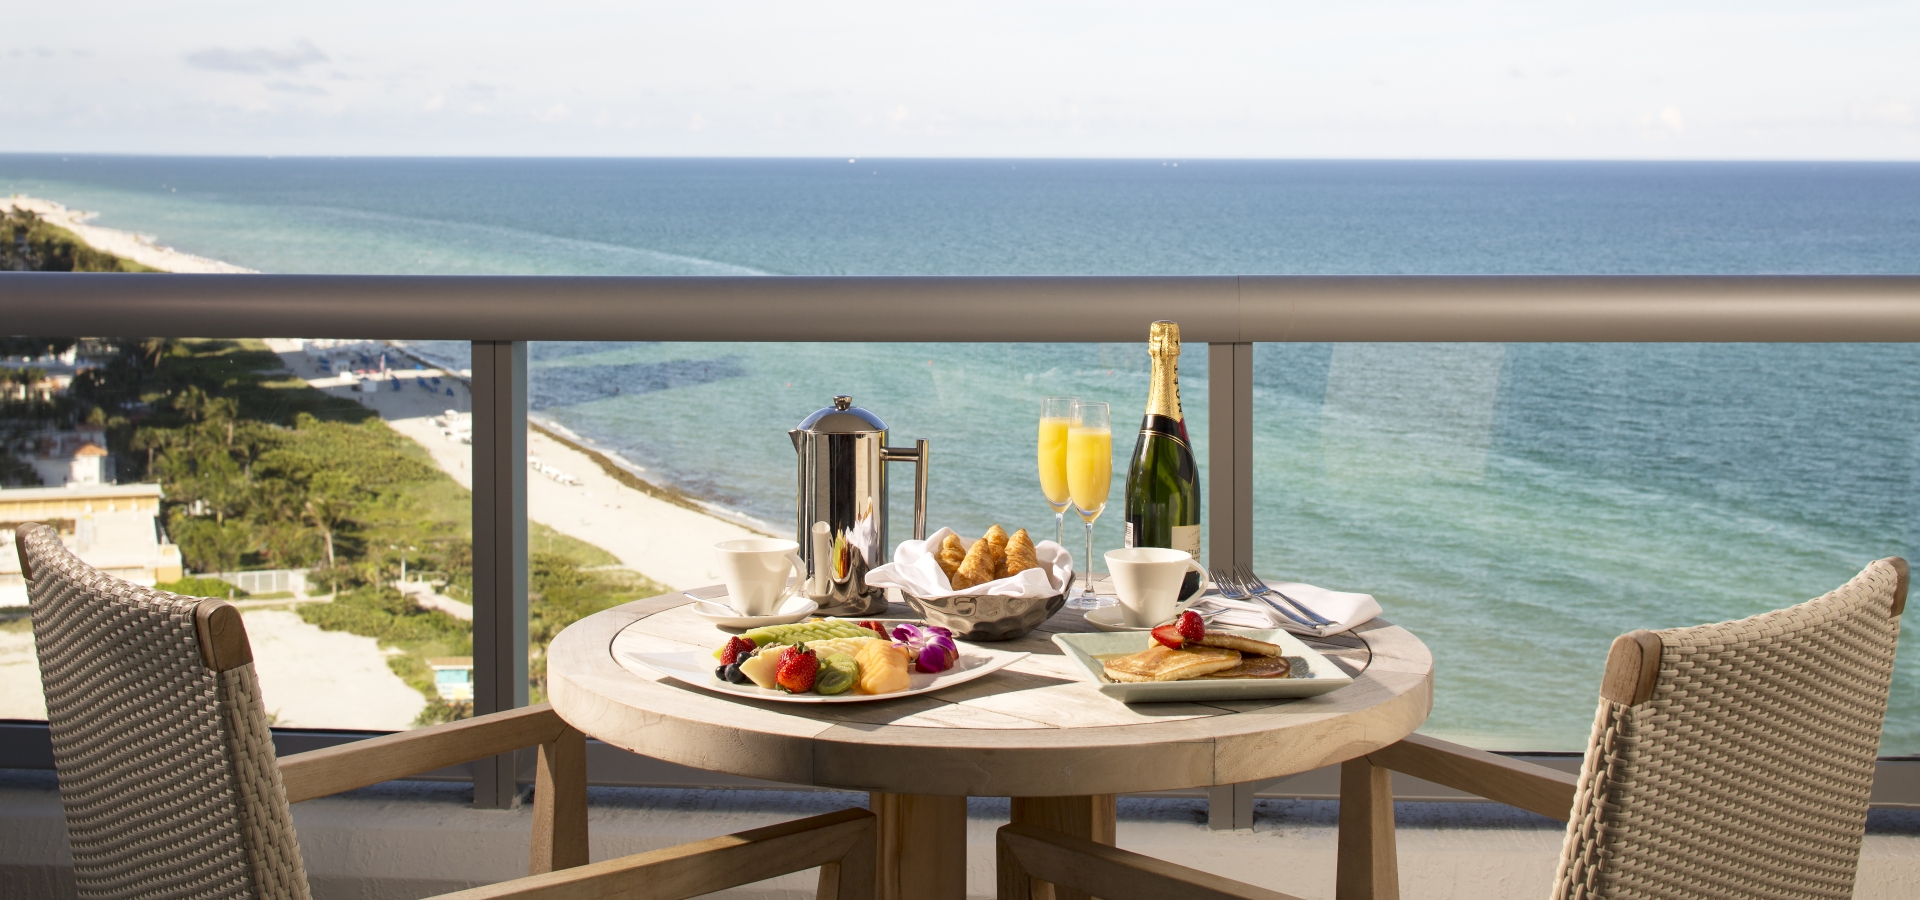 Champagne breakfast on a balcony